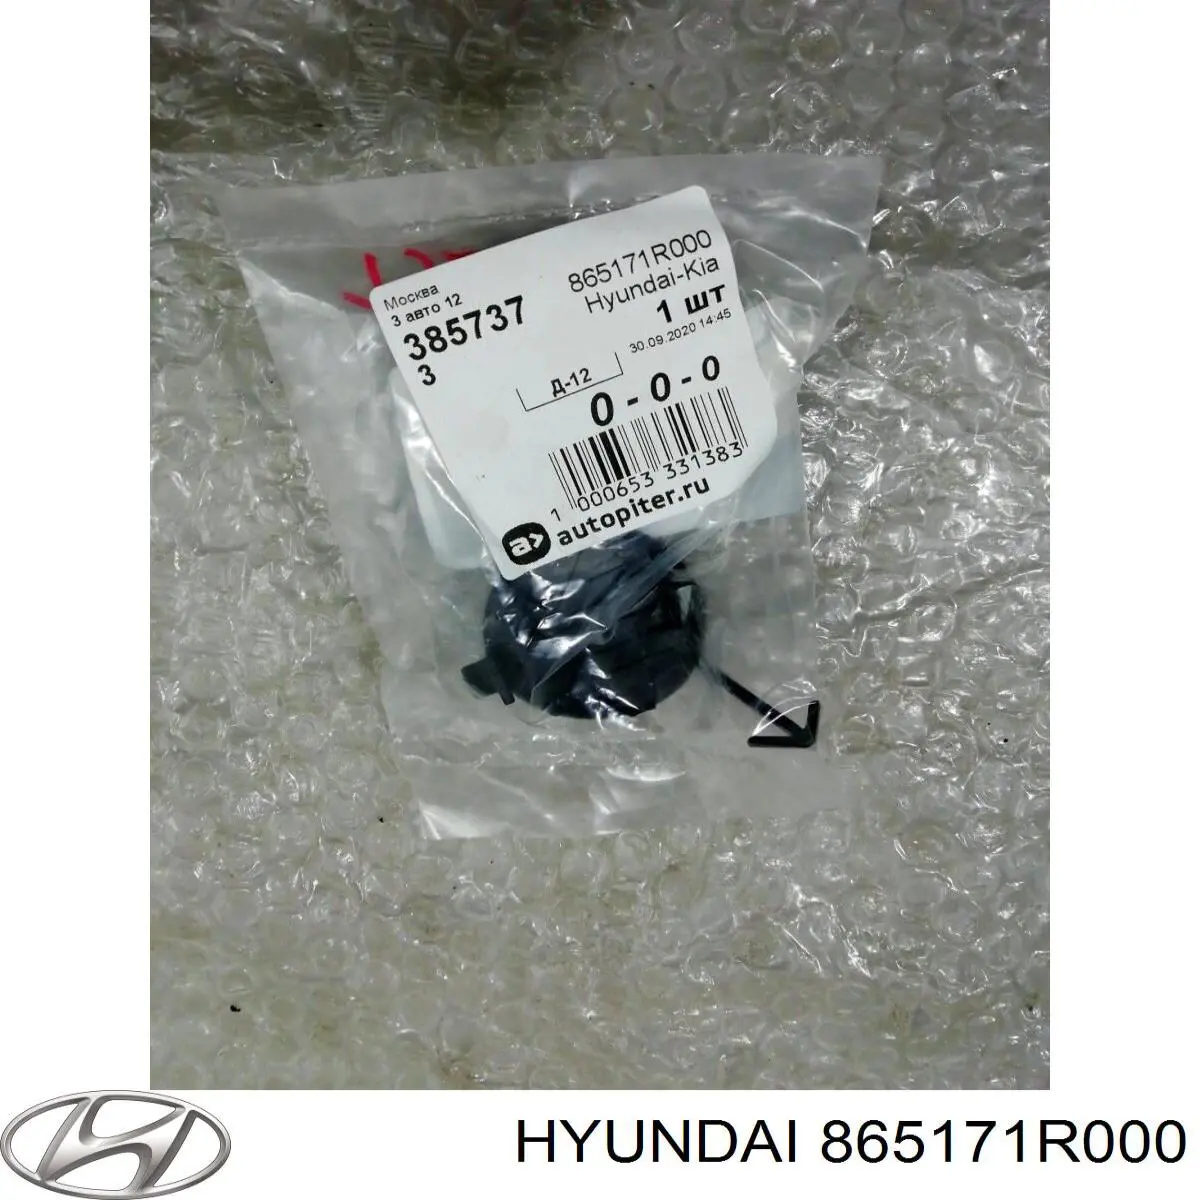 Cobertura de parachoques, enganche de remolque, delantera para Hyundai Accent (SB)